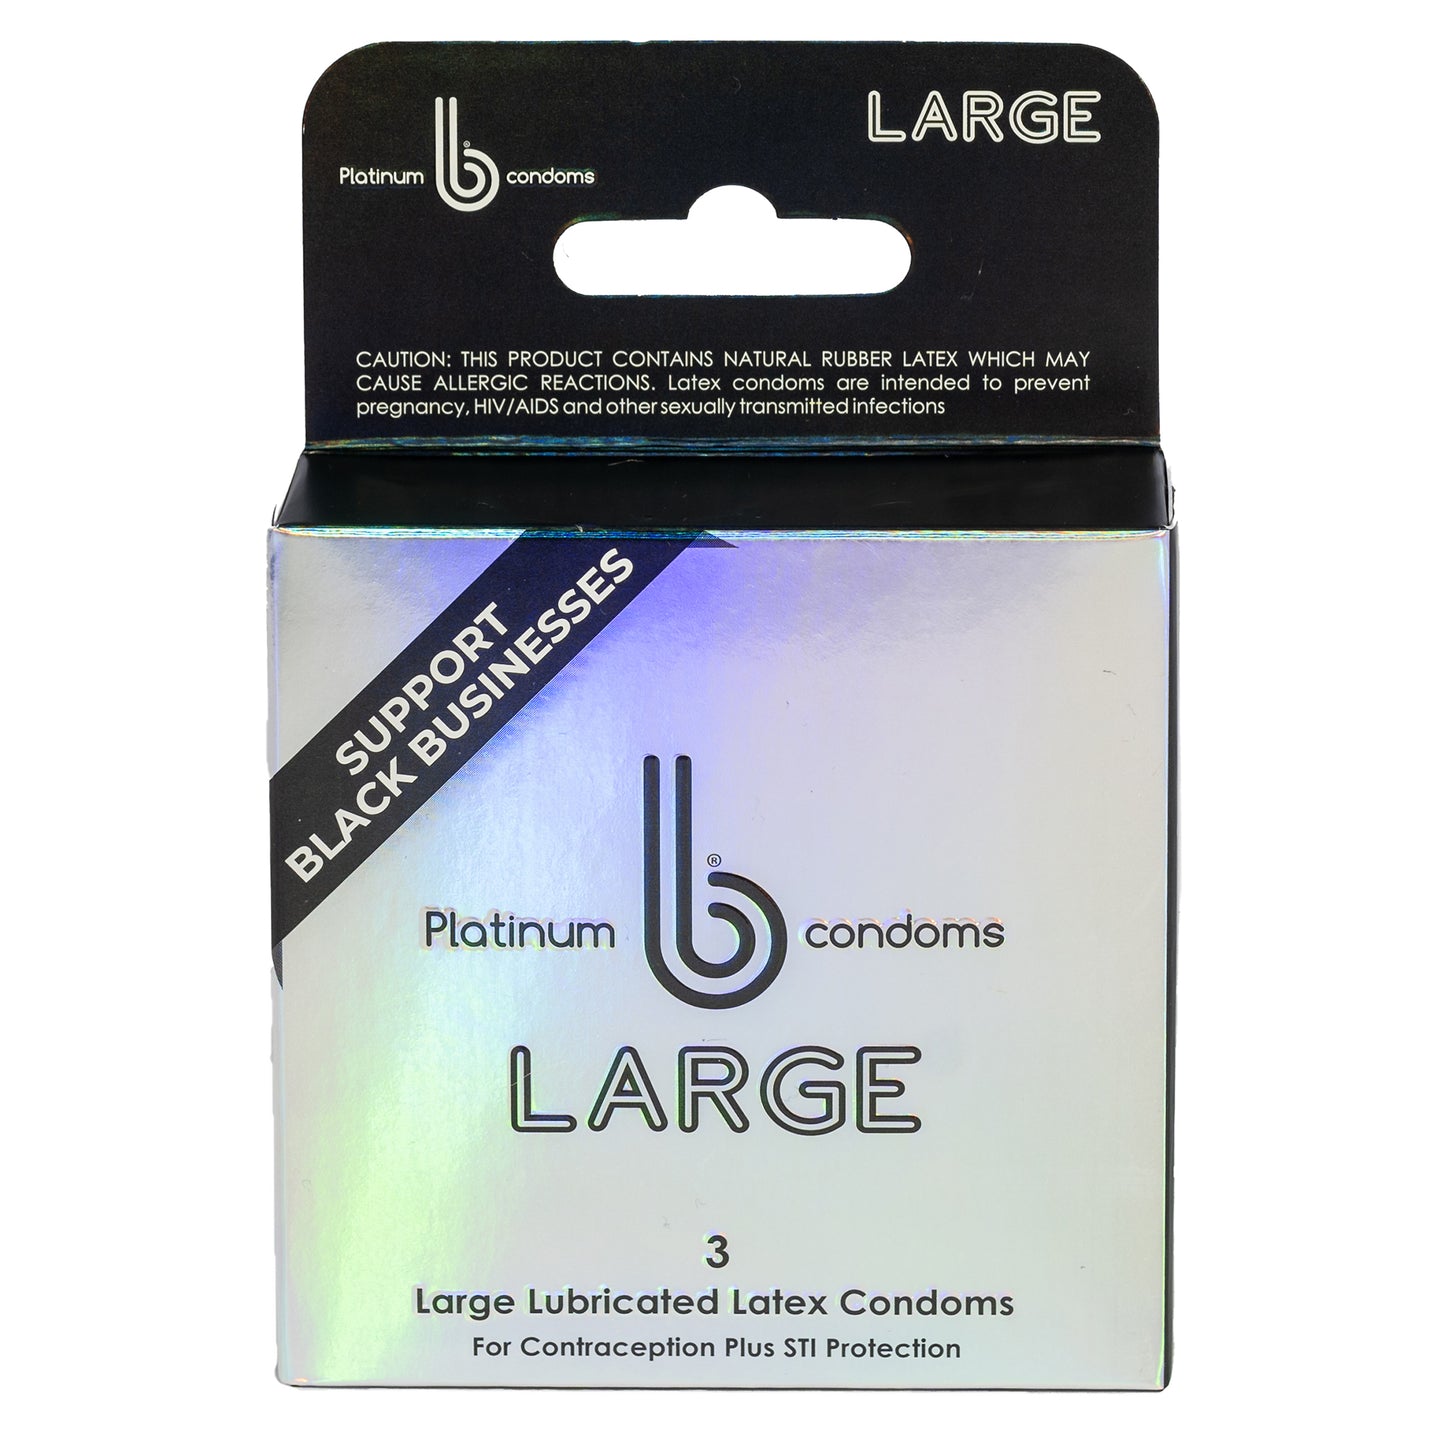 Platinum Large b condoms, 3 ct pack - 48 case